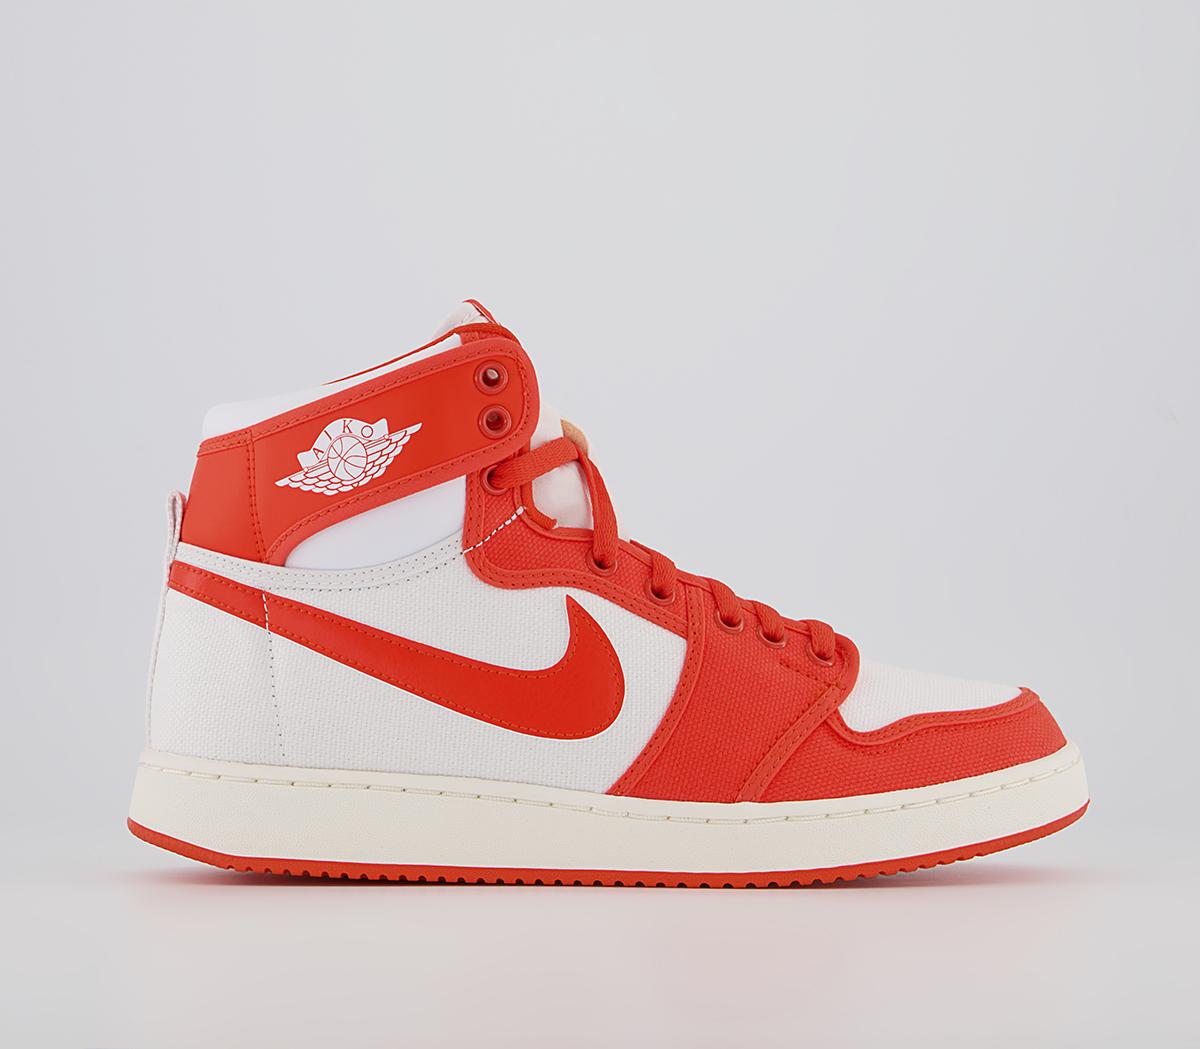 Air Jordan 1 KO High Rush Orange Whitesail - Basketball Shoes